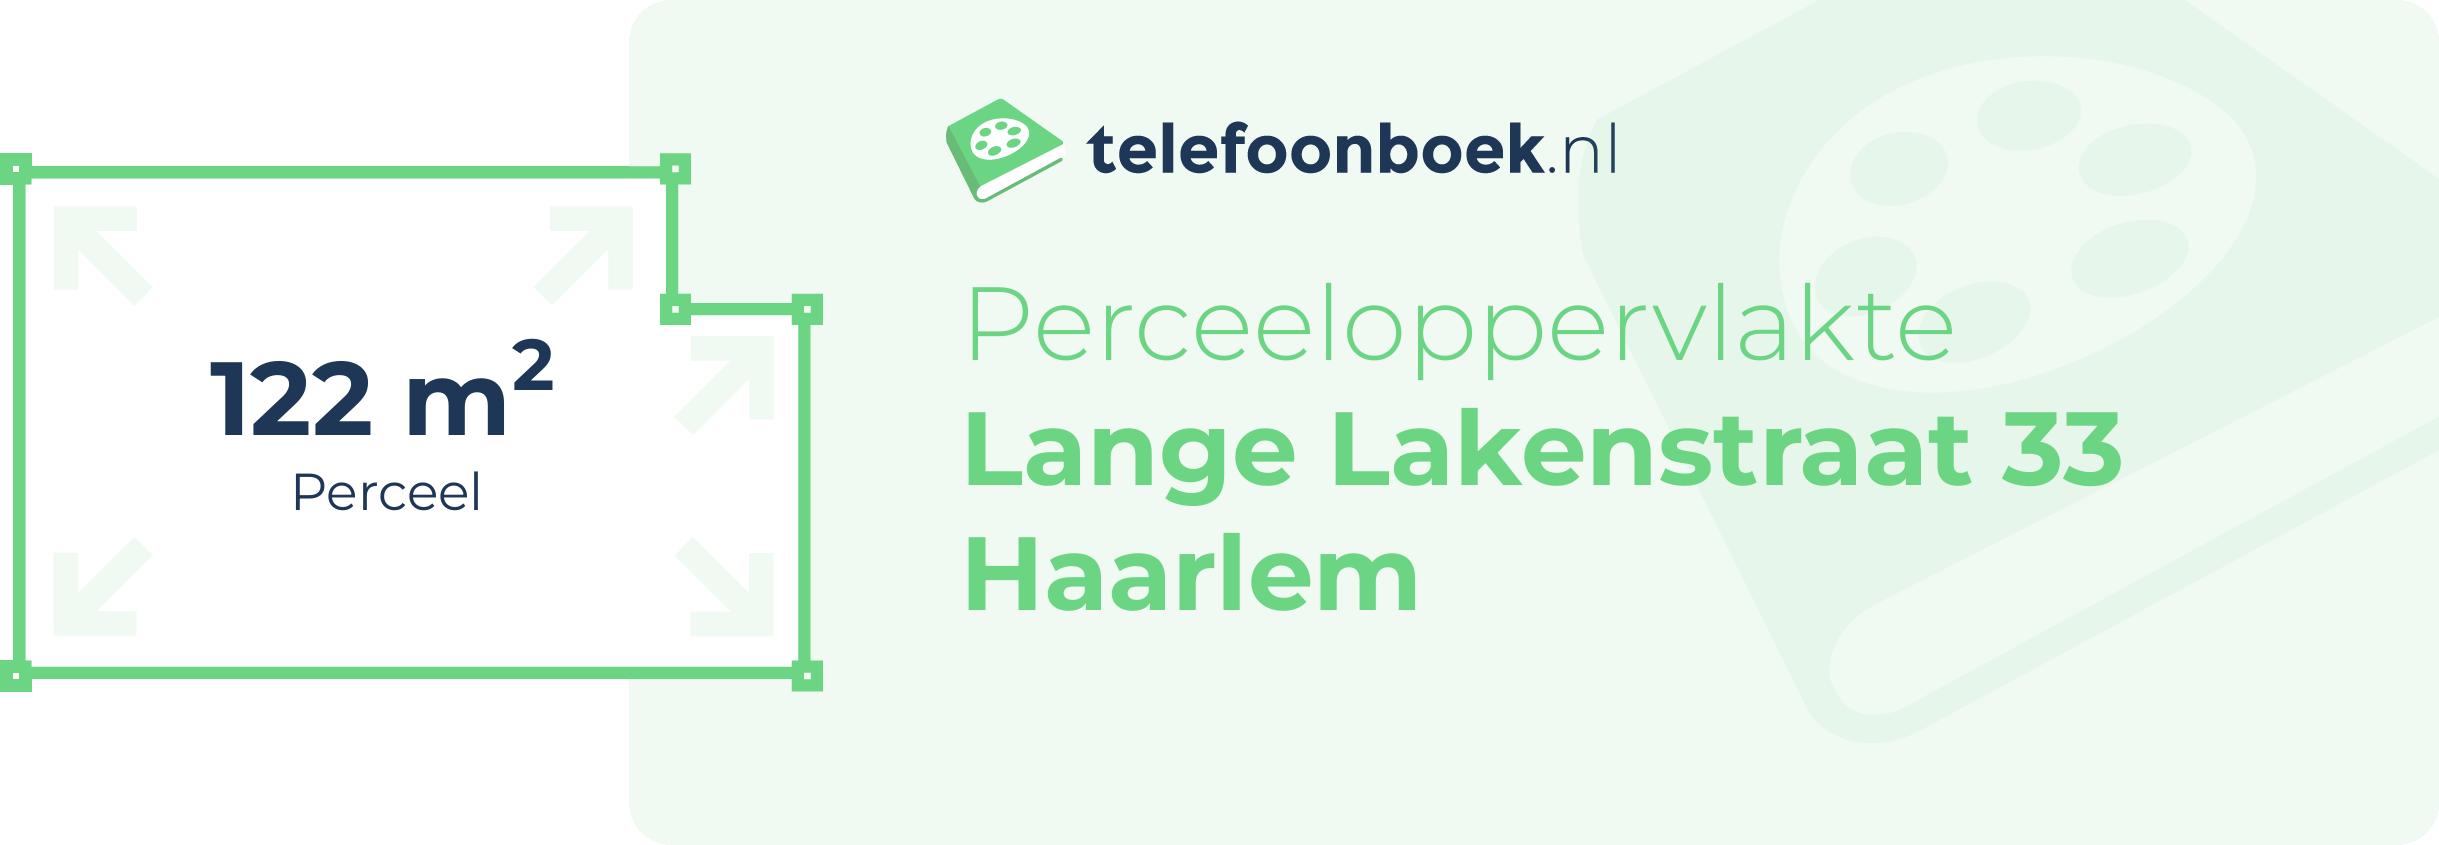 Perceeloppervlakte Lange Lakenstraat 33 Haarlem